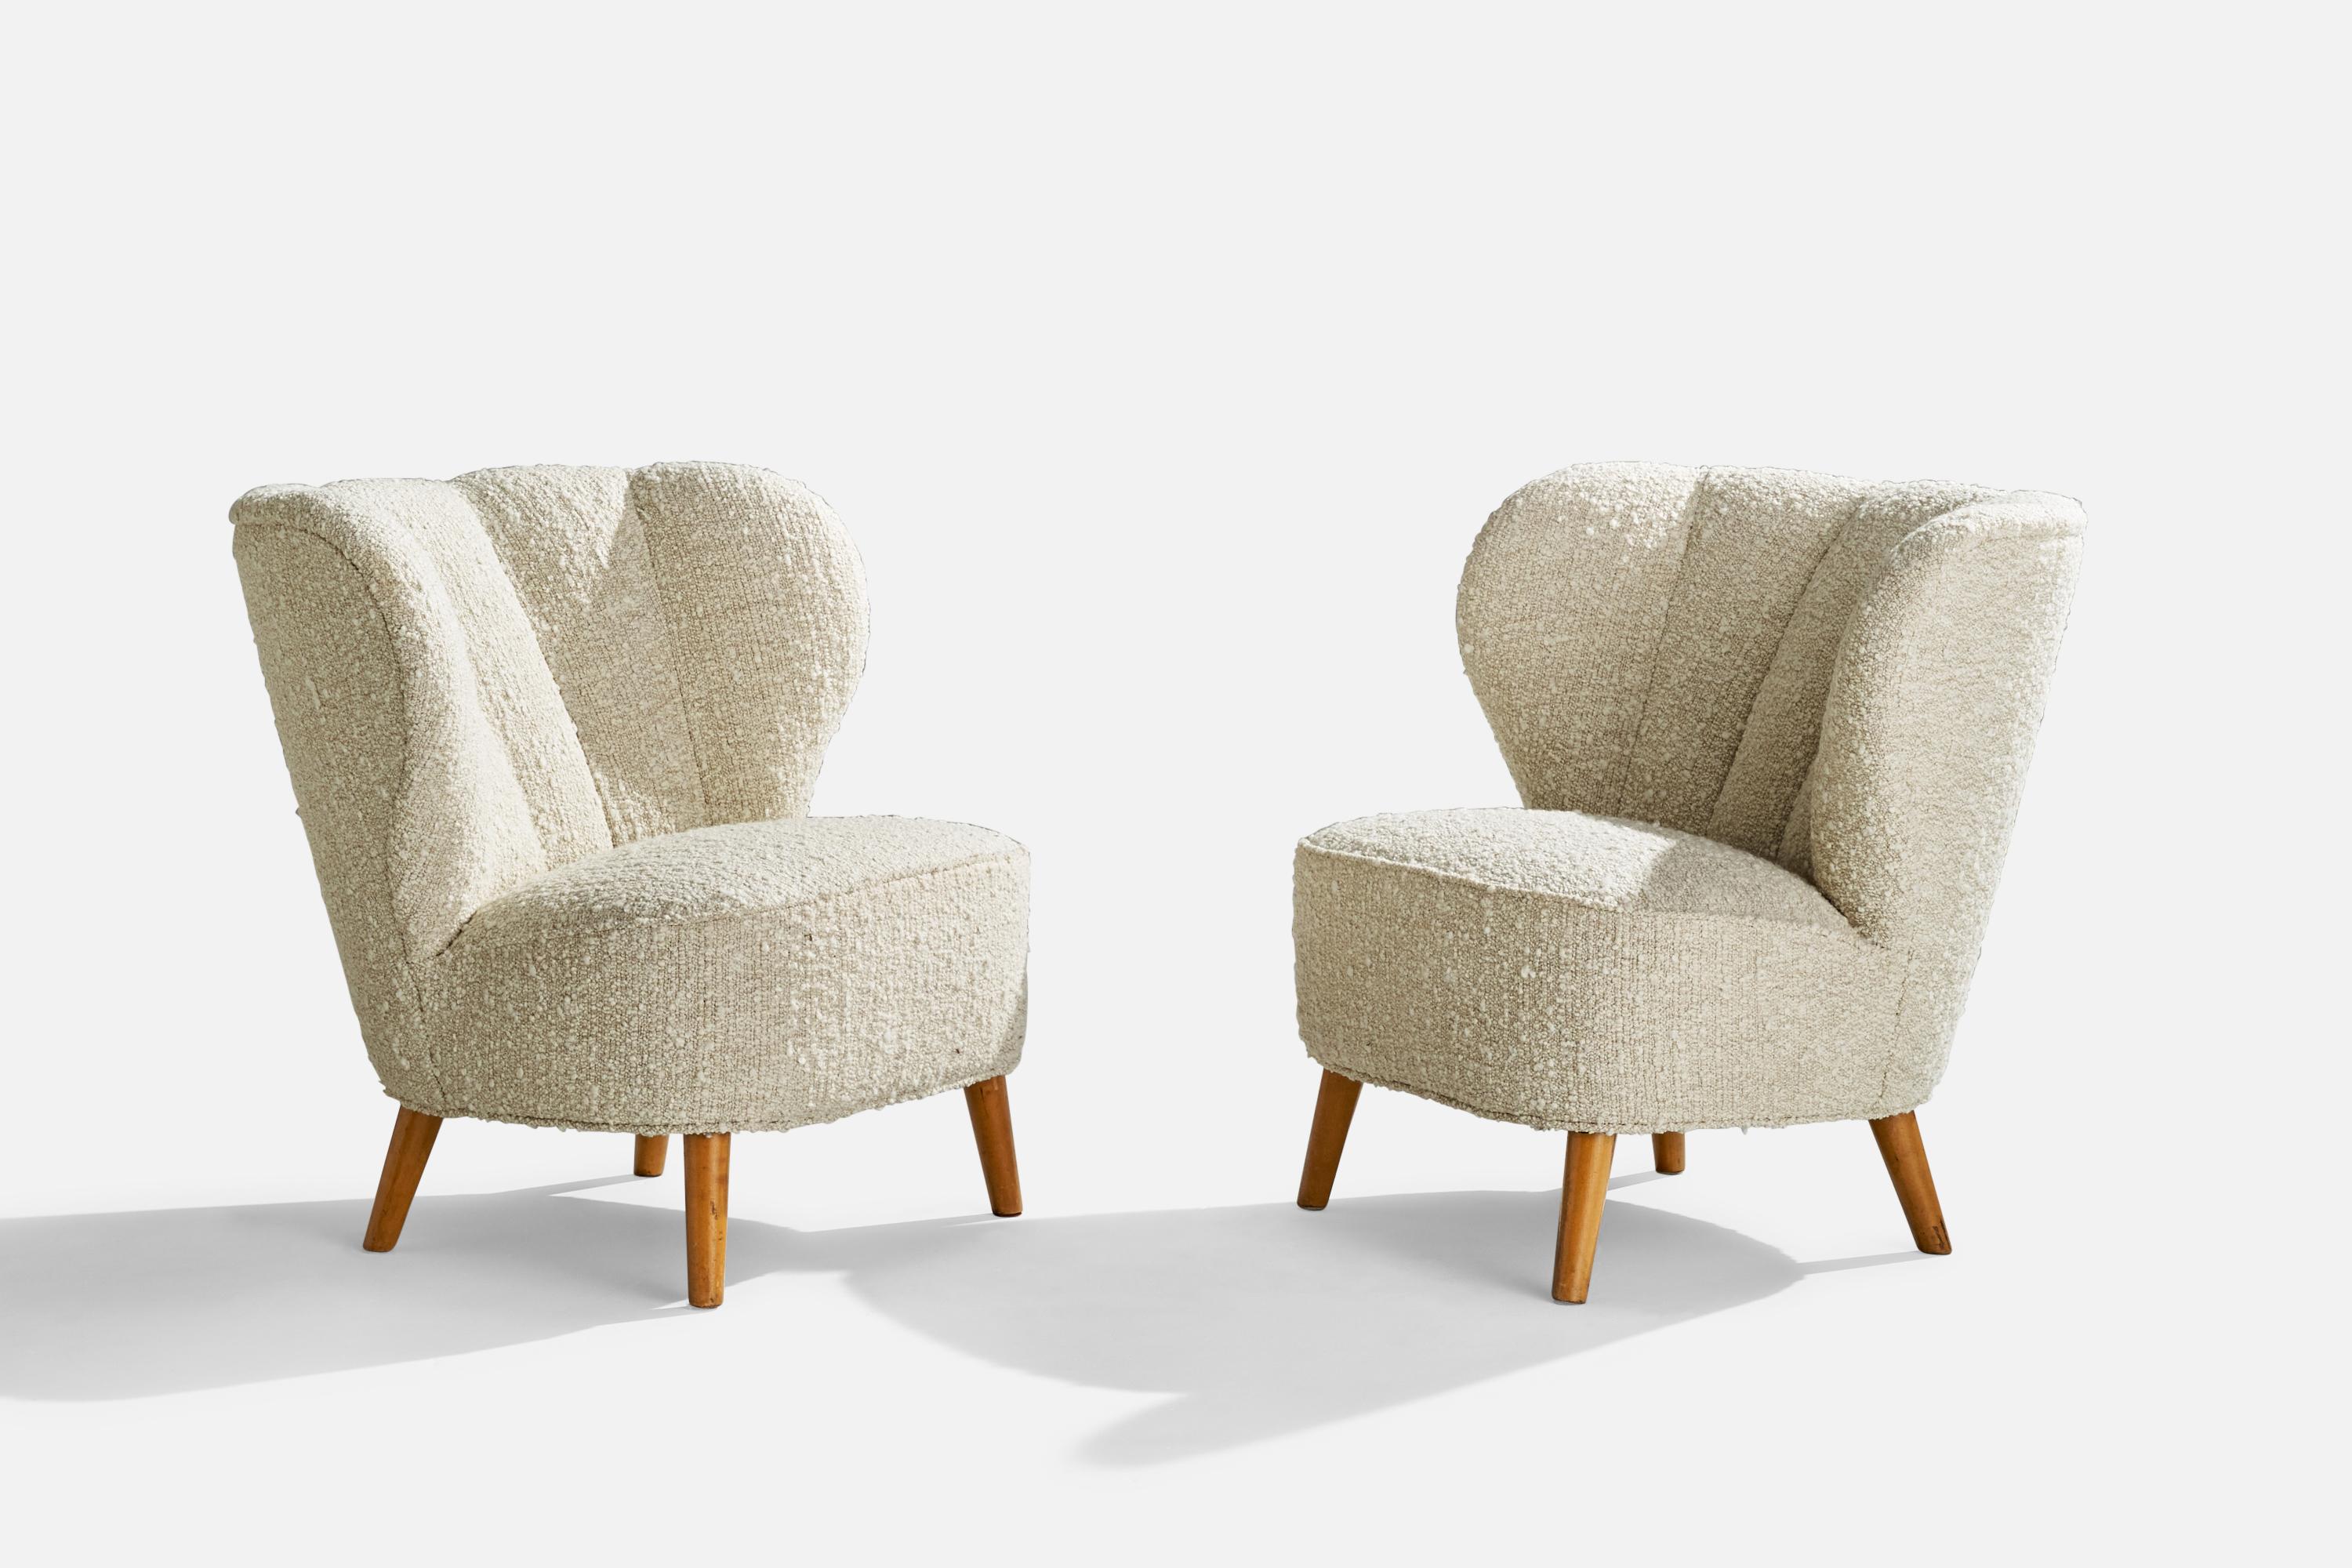 Paire de chaises longues en tissu bouclé blanc et en bouleau, conçues et produites en Finlande dans les années 1940.

Hauteur d'assise 16